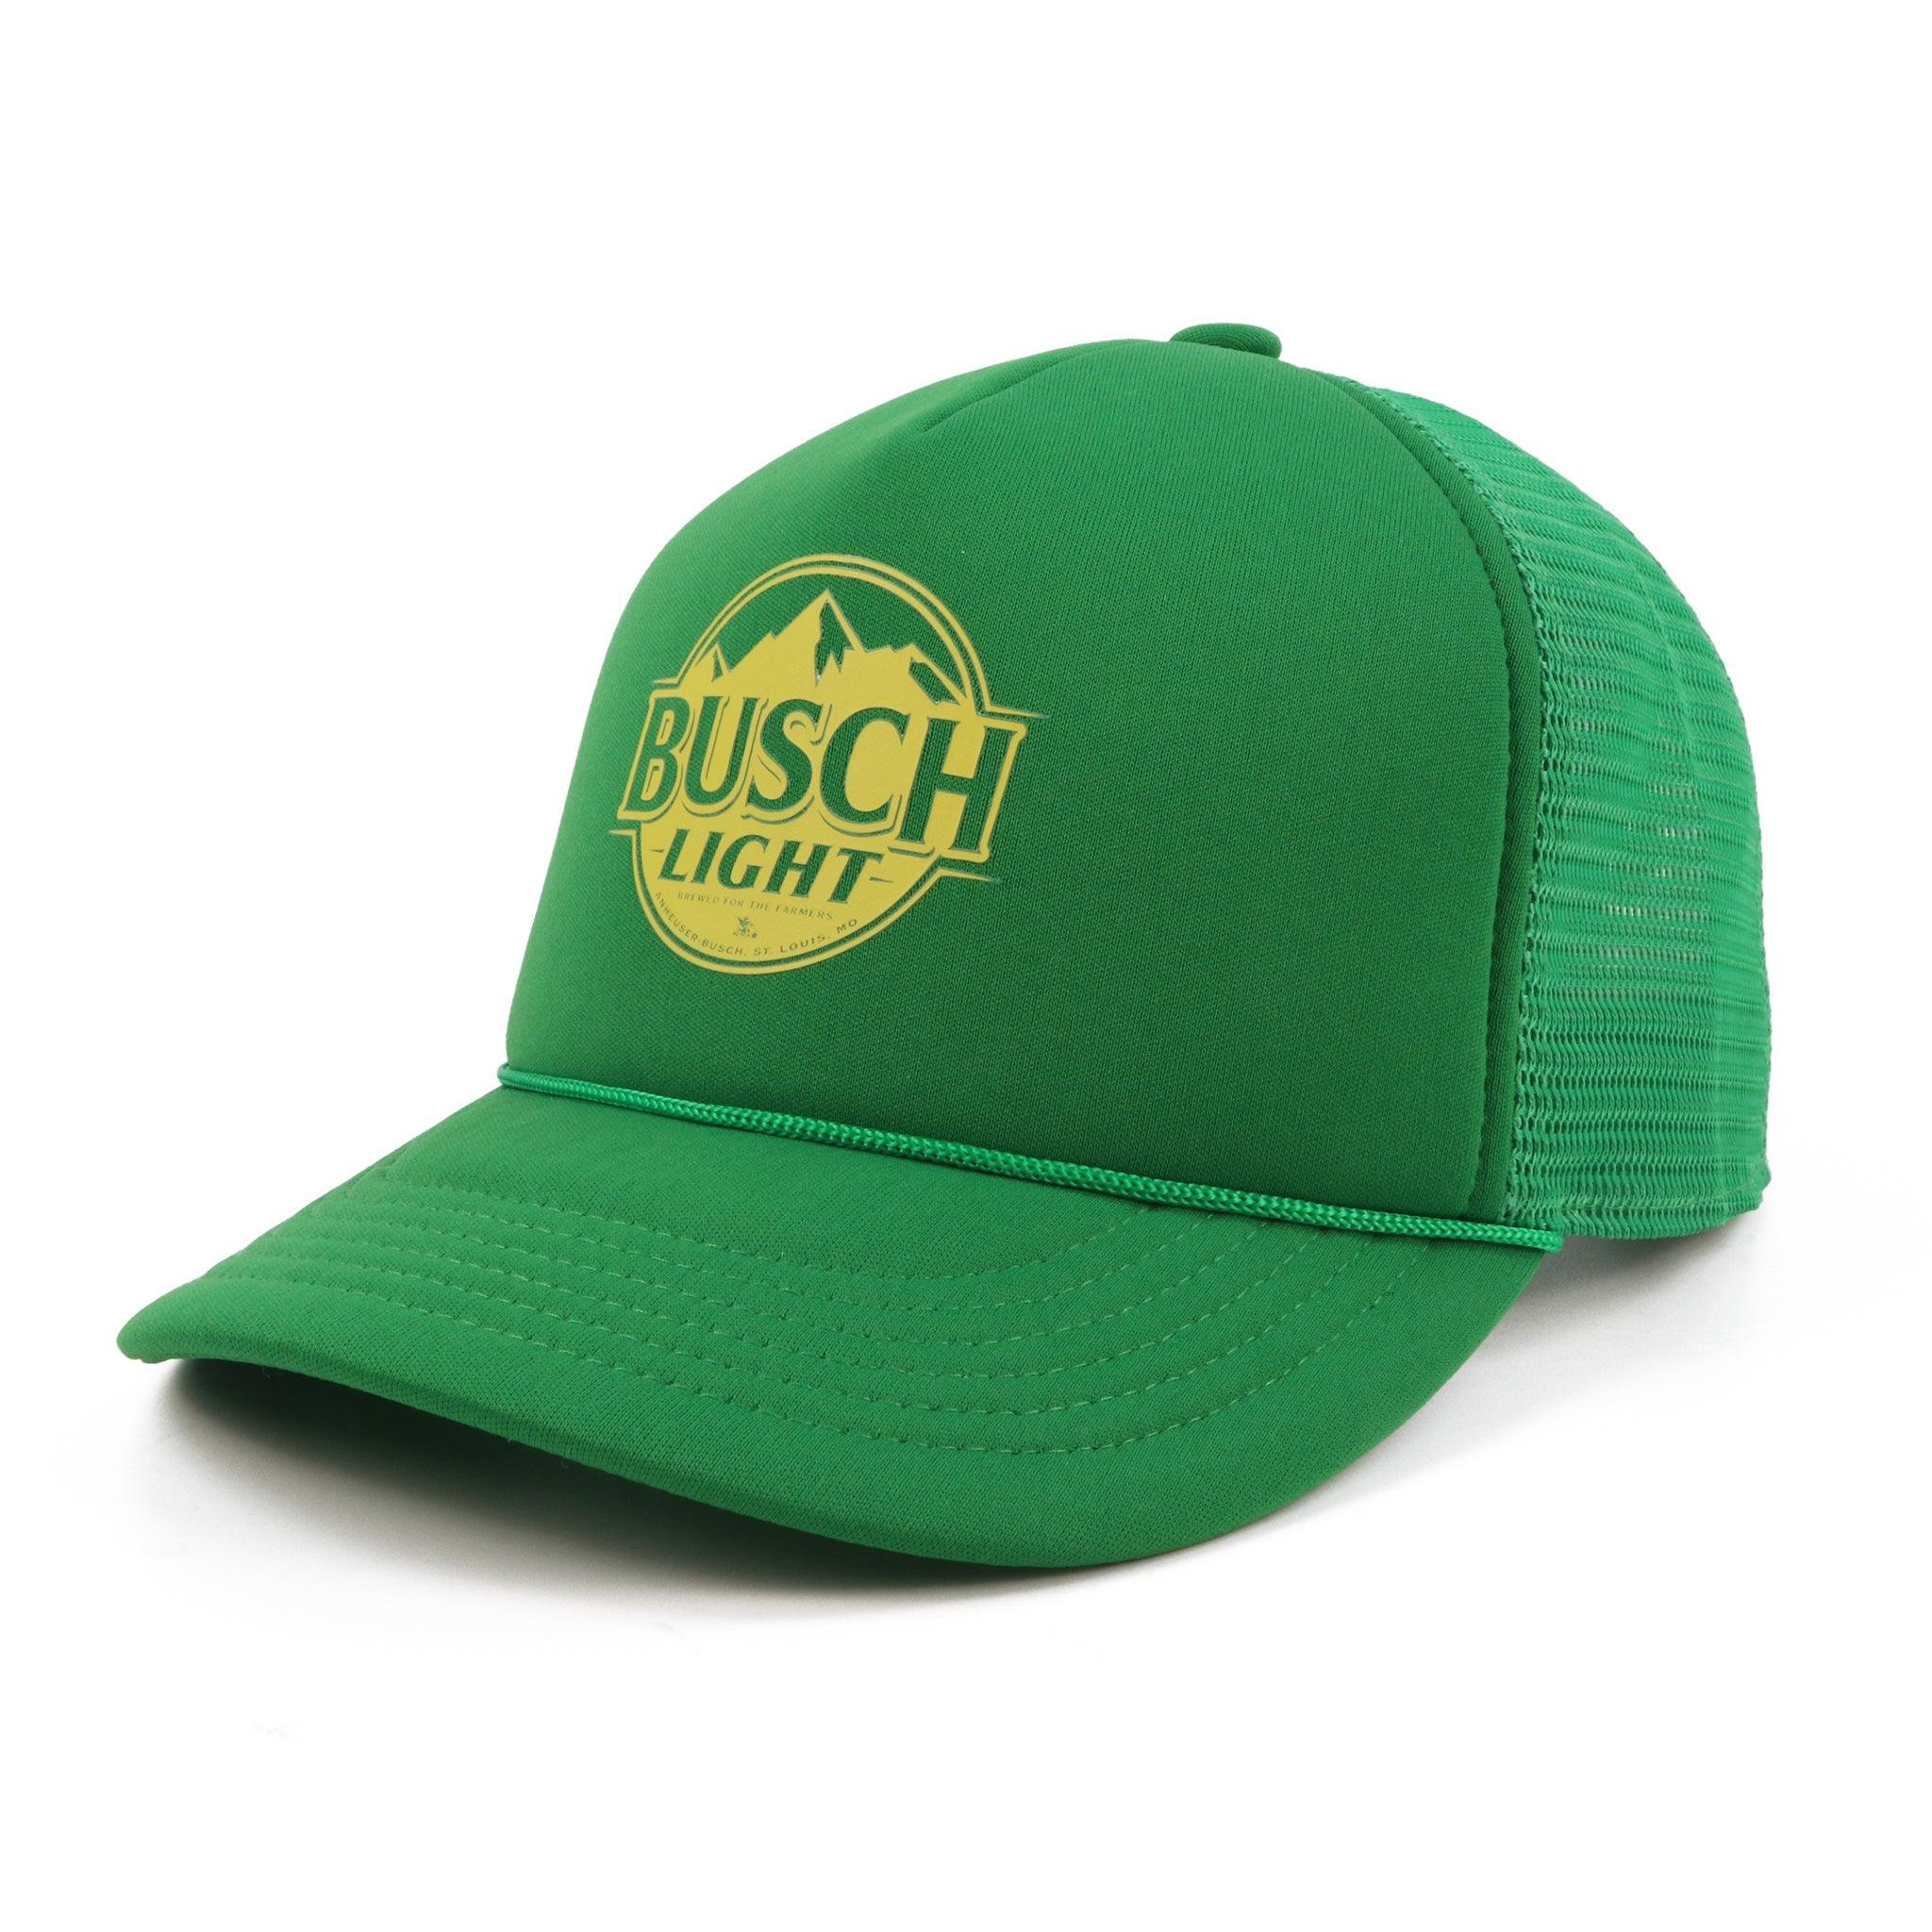 Busch Light Farmers Green Rope Hat